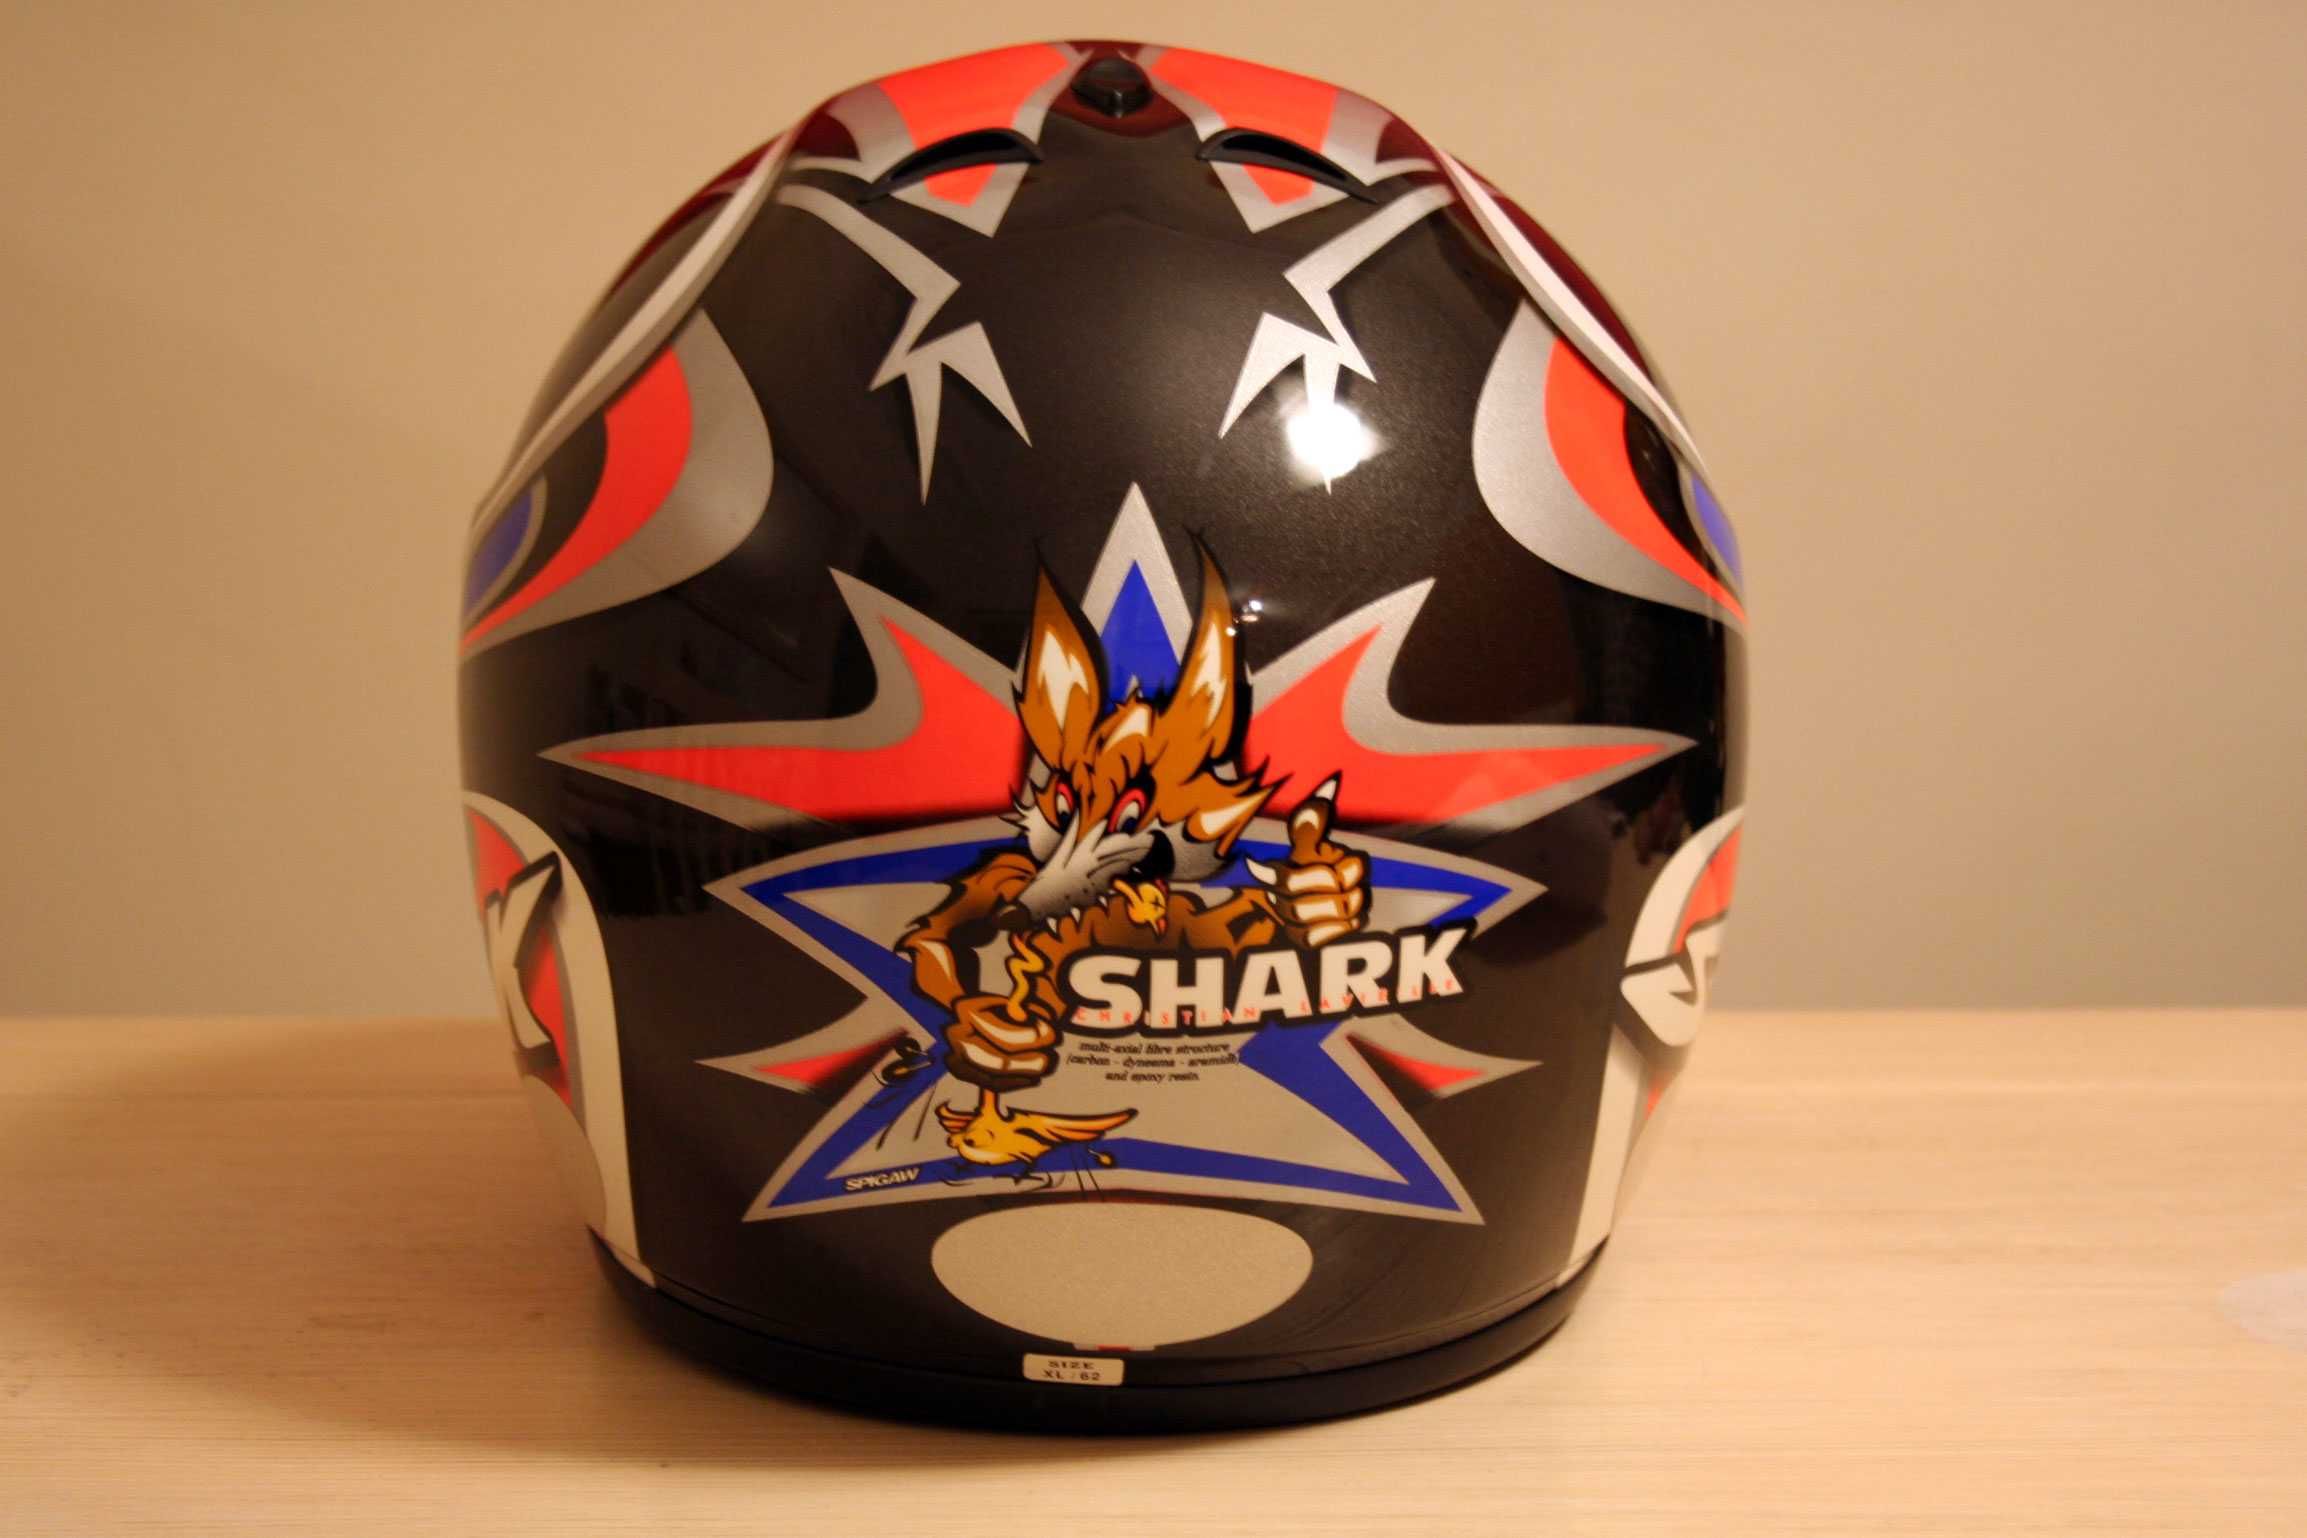 Capacete Shark RSR Carbono/Kevlar - modelo de competição